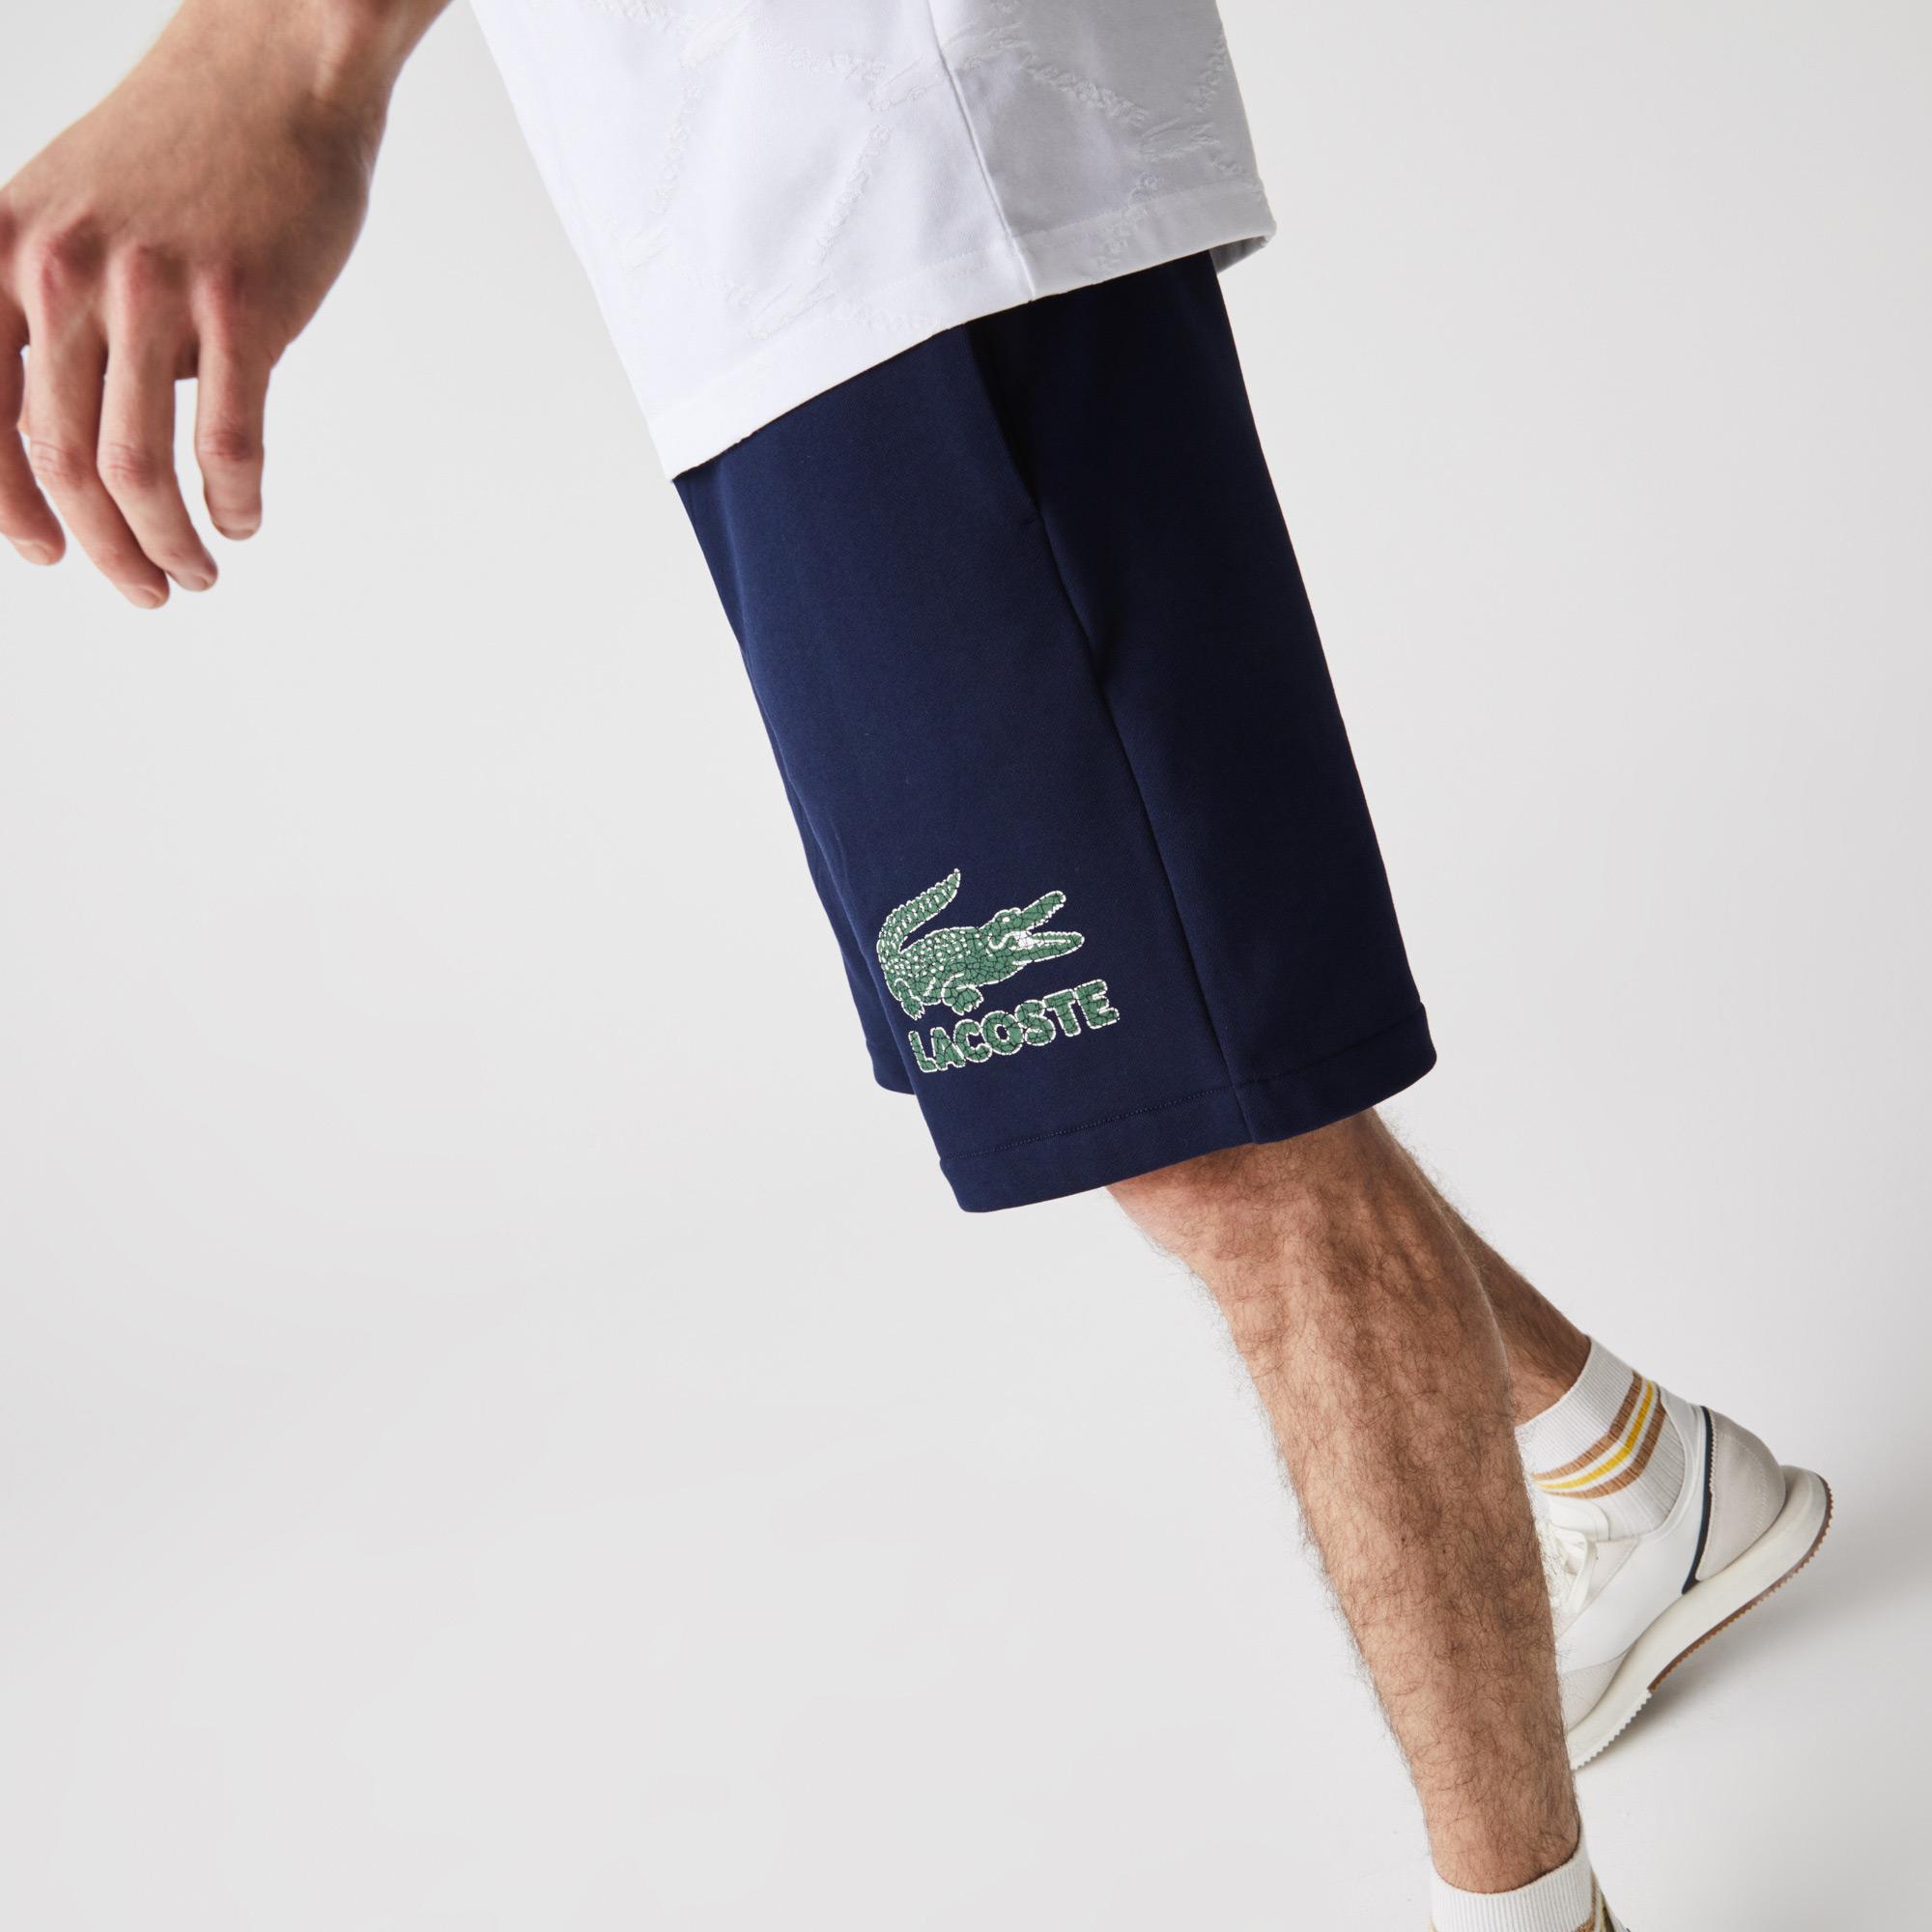 
Lacoste Men's shorts